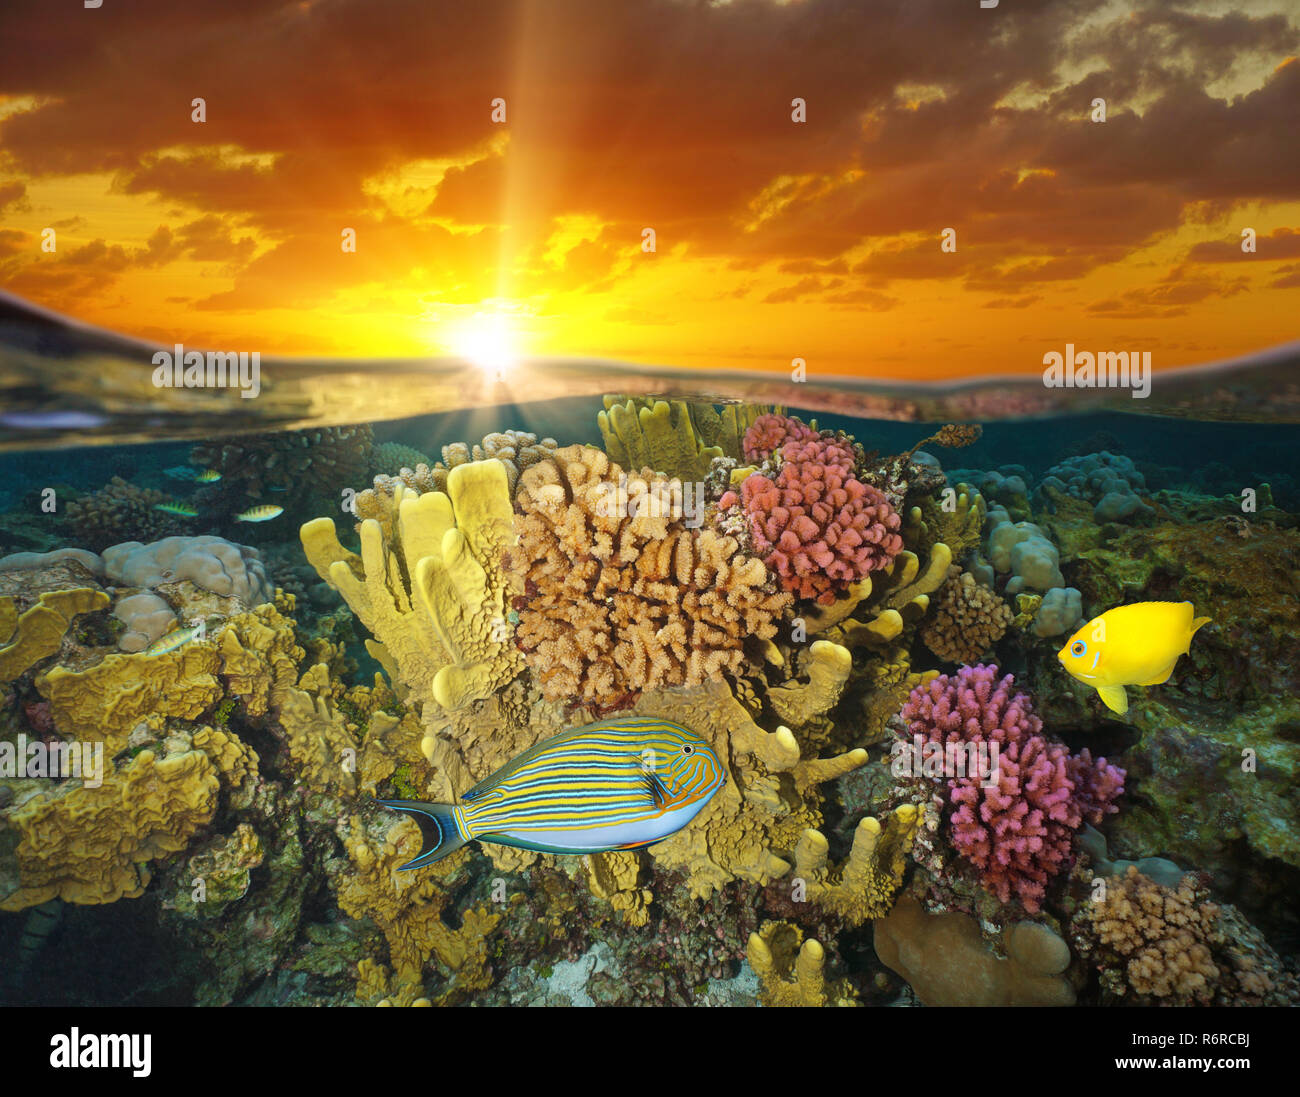 Ciel de coucher du soleil et des récifs coralliens colorés avec des poissons de mer sous-marine, split voir la moitié au-dessus et au-dessous de la surface de l'eau, Bora Bora, Polynésie française, l'océan Pacifique Banque D'Images